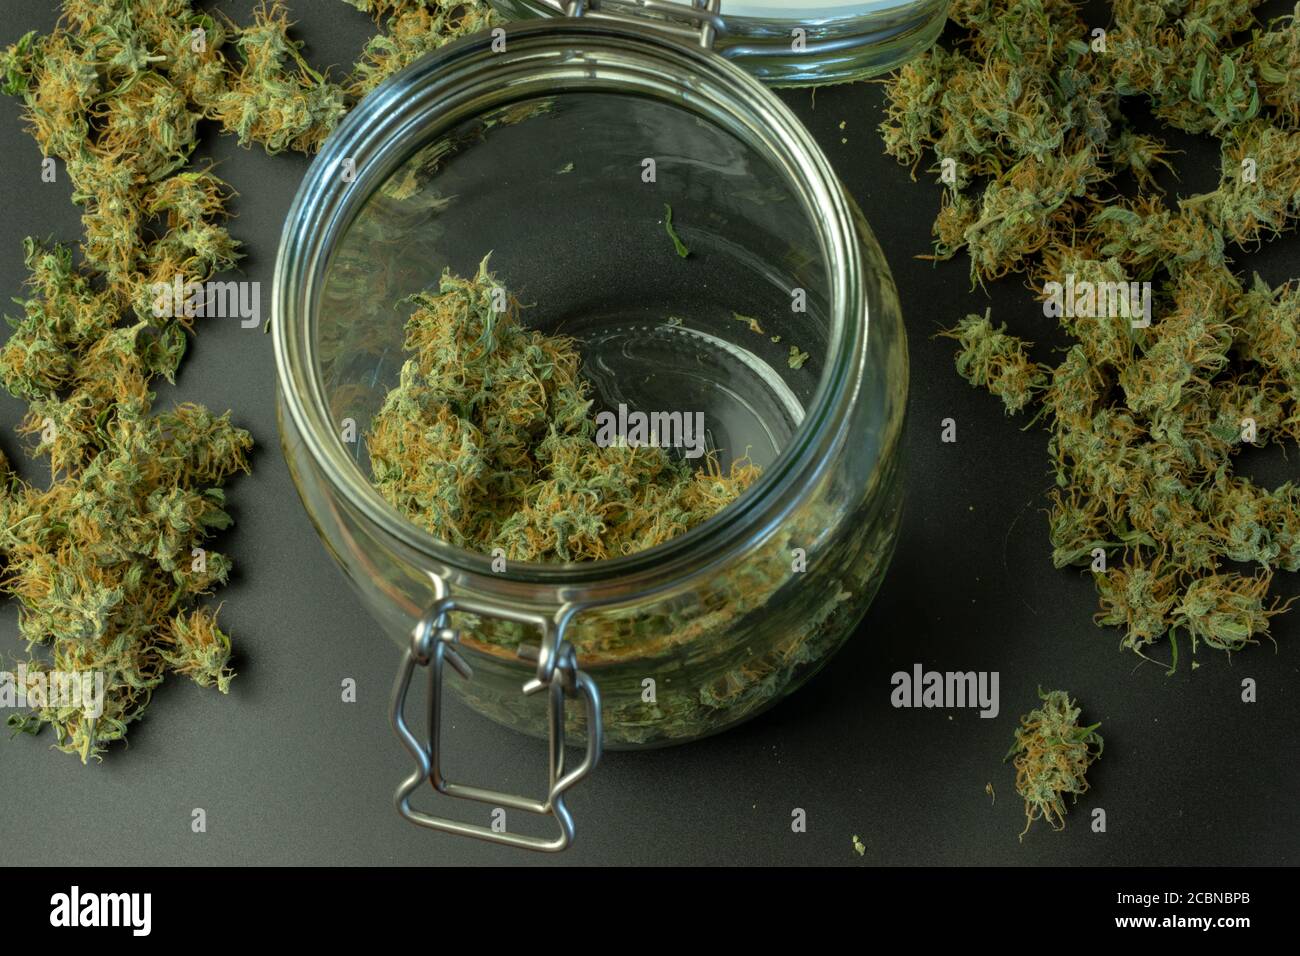 Vista superior de brotes de cannabis en tarro de vidrio con marihuana en el fondo Foto de stock